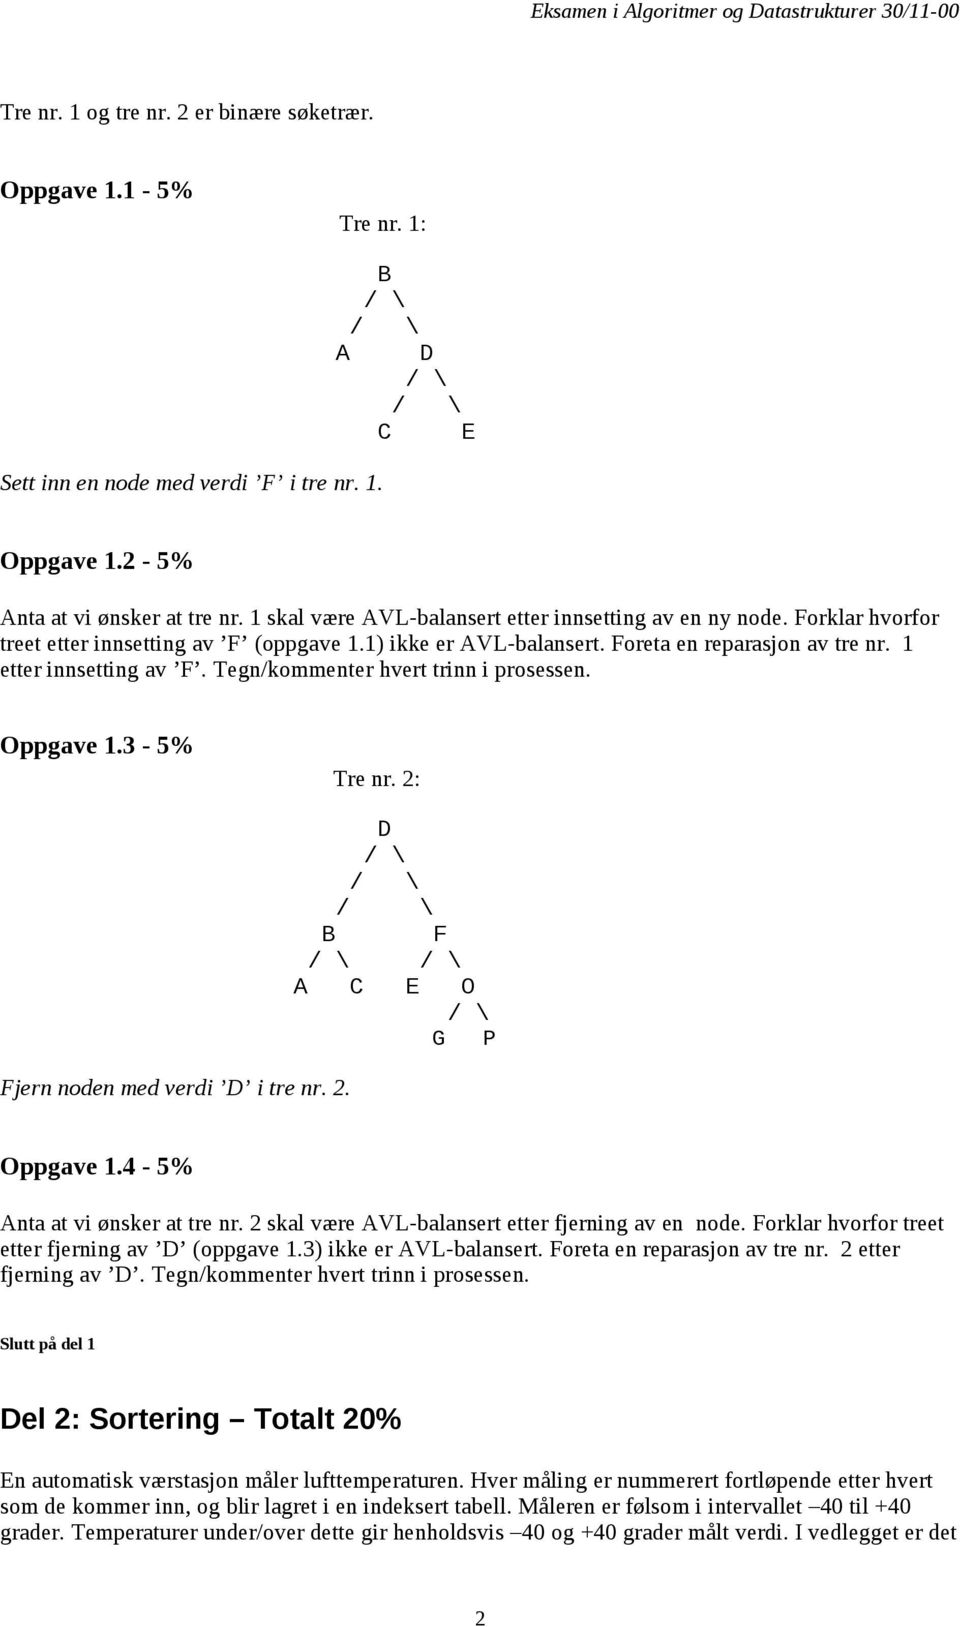 Tegn/kommenter hvert trinn i prosessen. Oppgave 1.3-5% Tre nr. 2: Fjern noden med verdi D i tre nr. 2. D B F A C E O G P Oppgave 1.4-5% Anta at vi ønsker at tre nr.